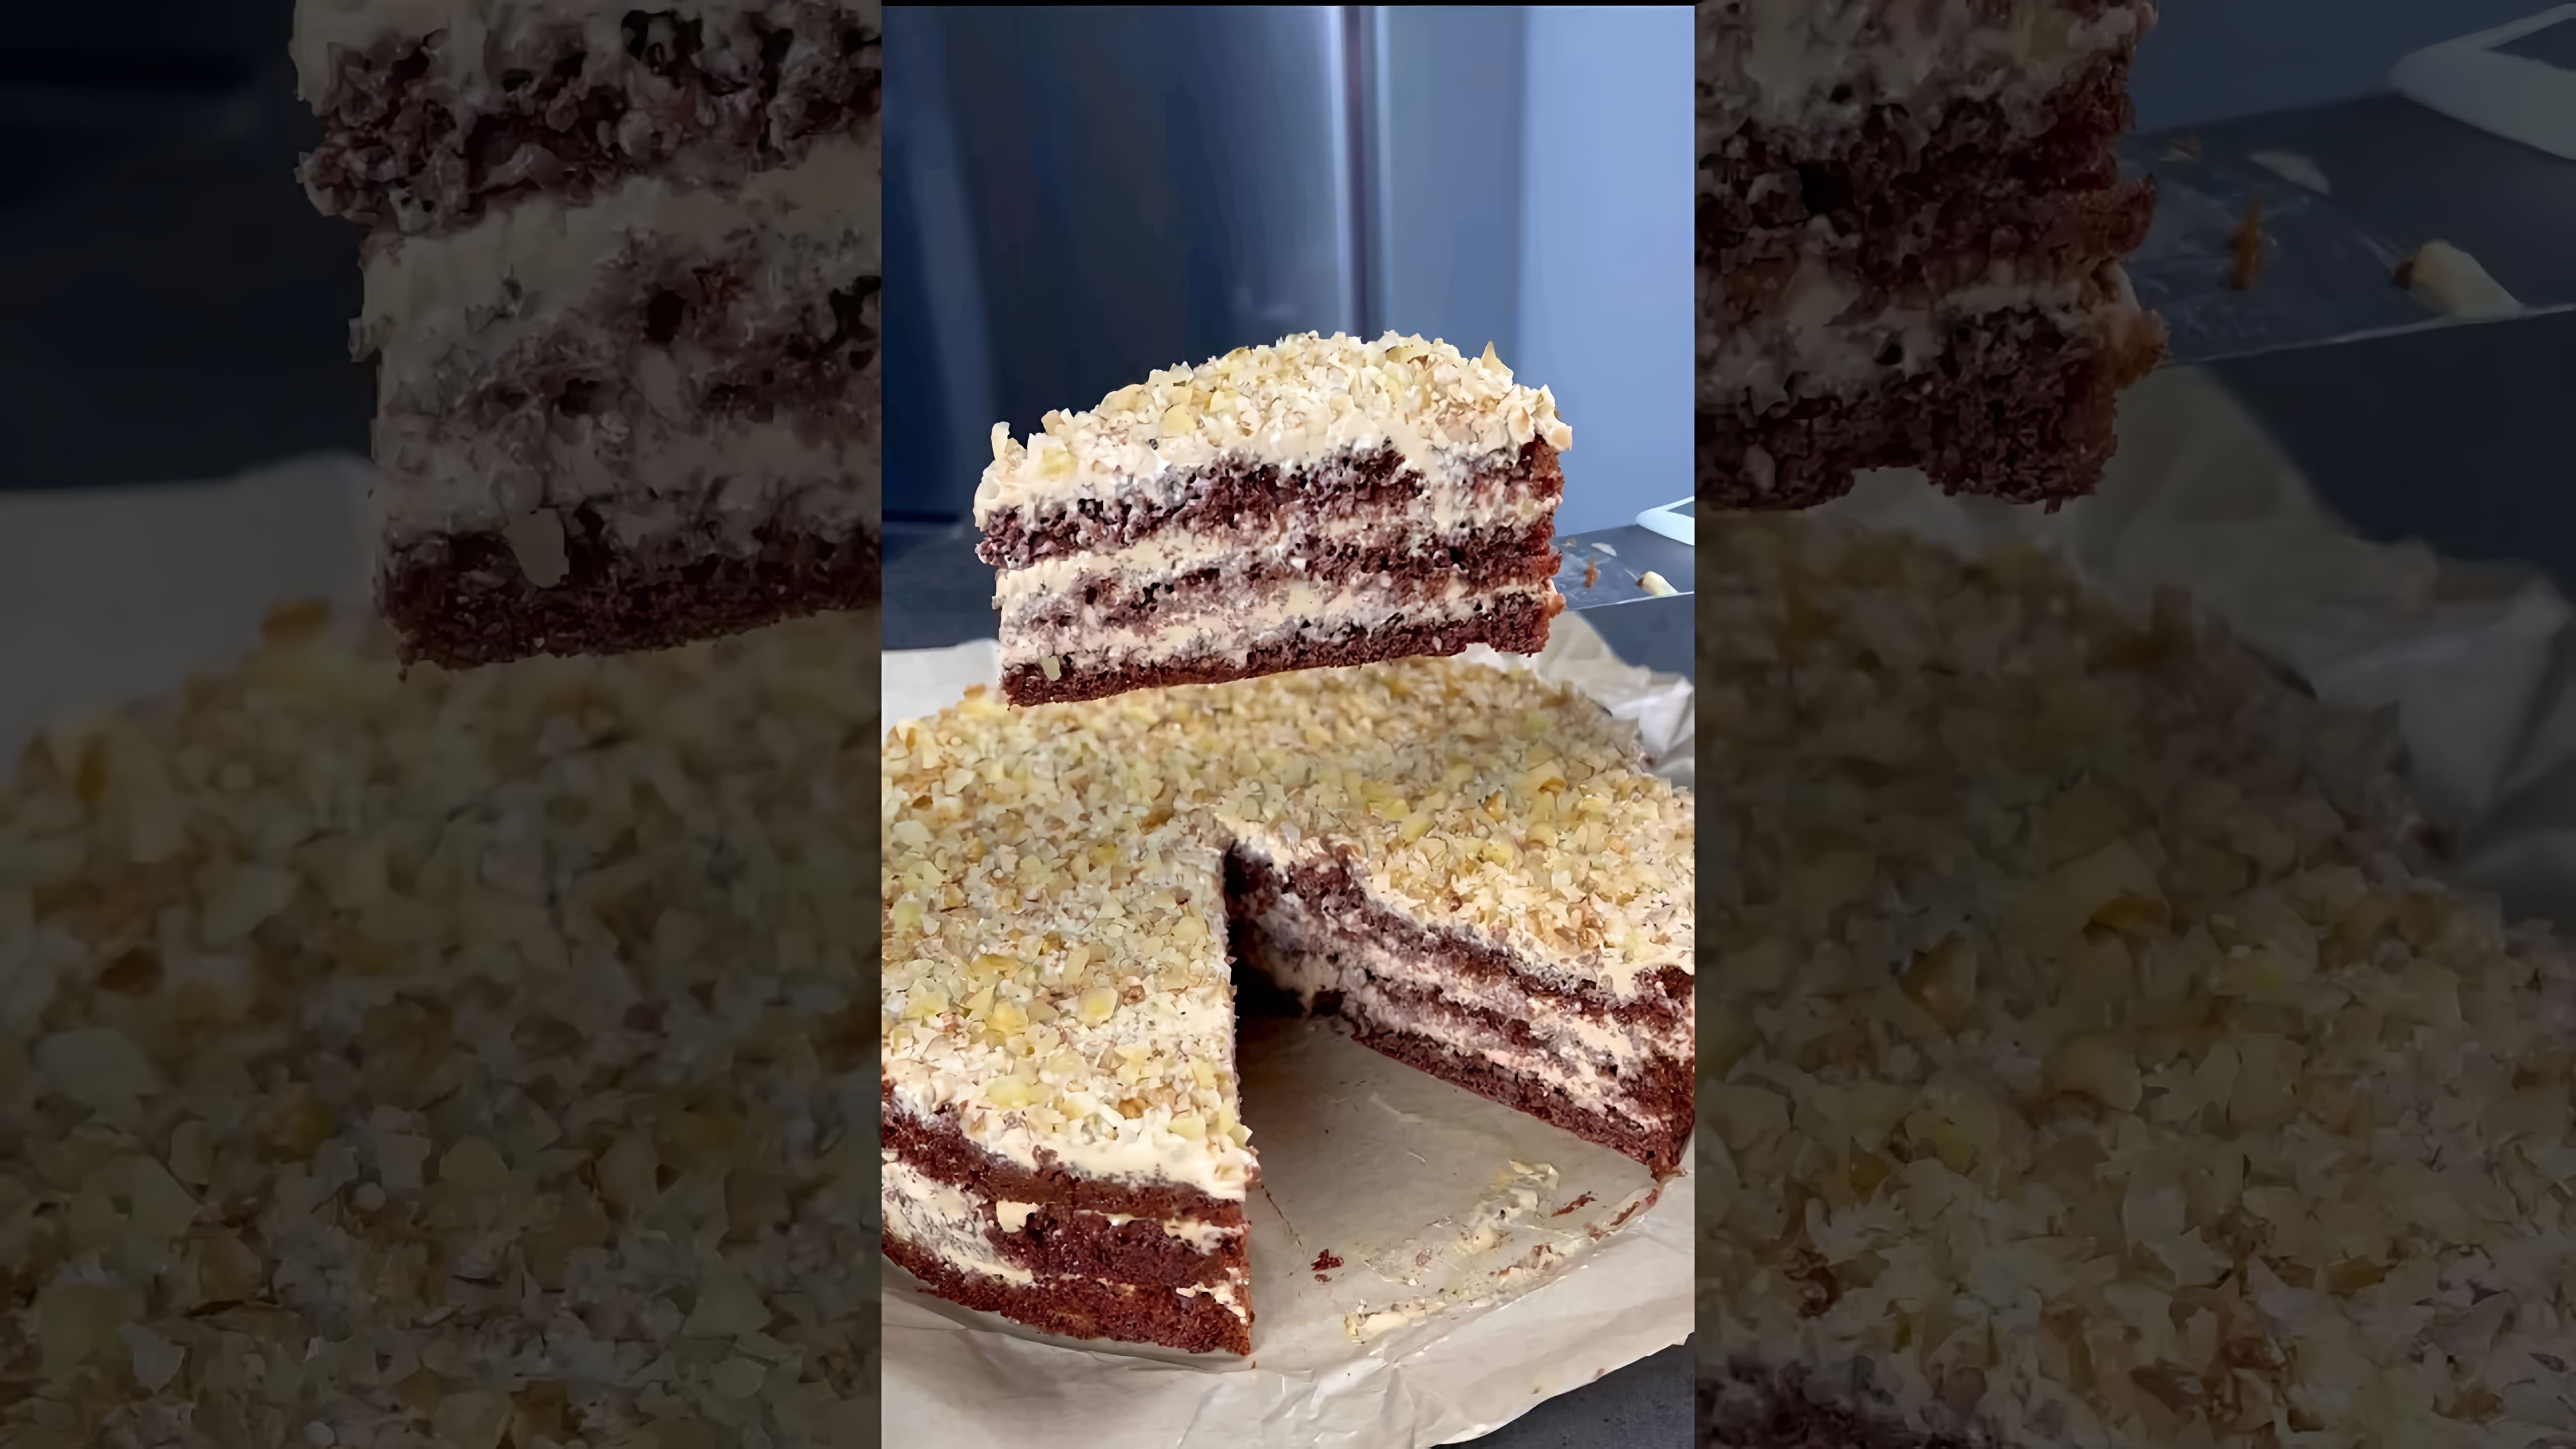 В этом видео демонстрируется рецепт приготовления торта "Три стакана"